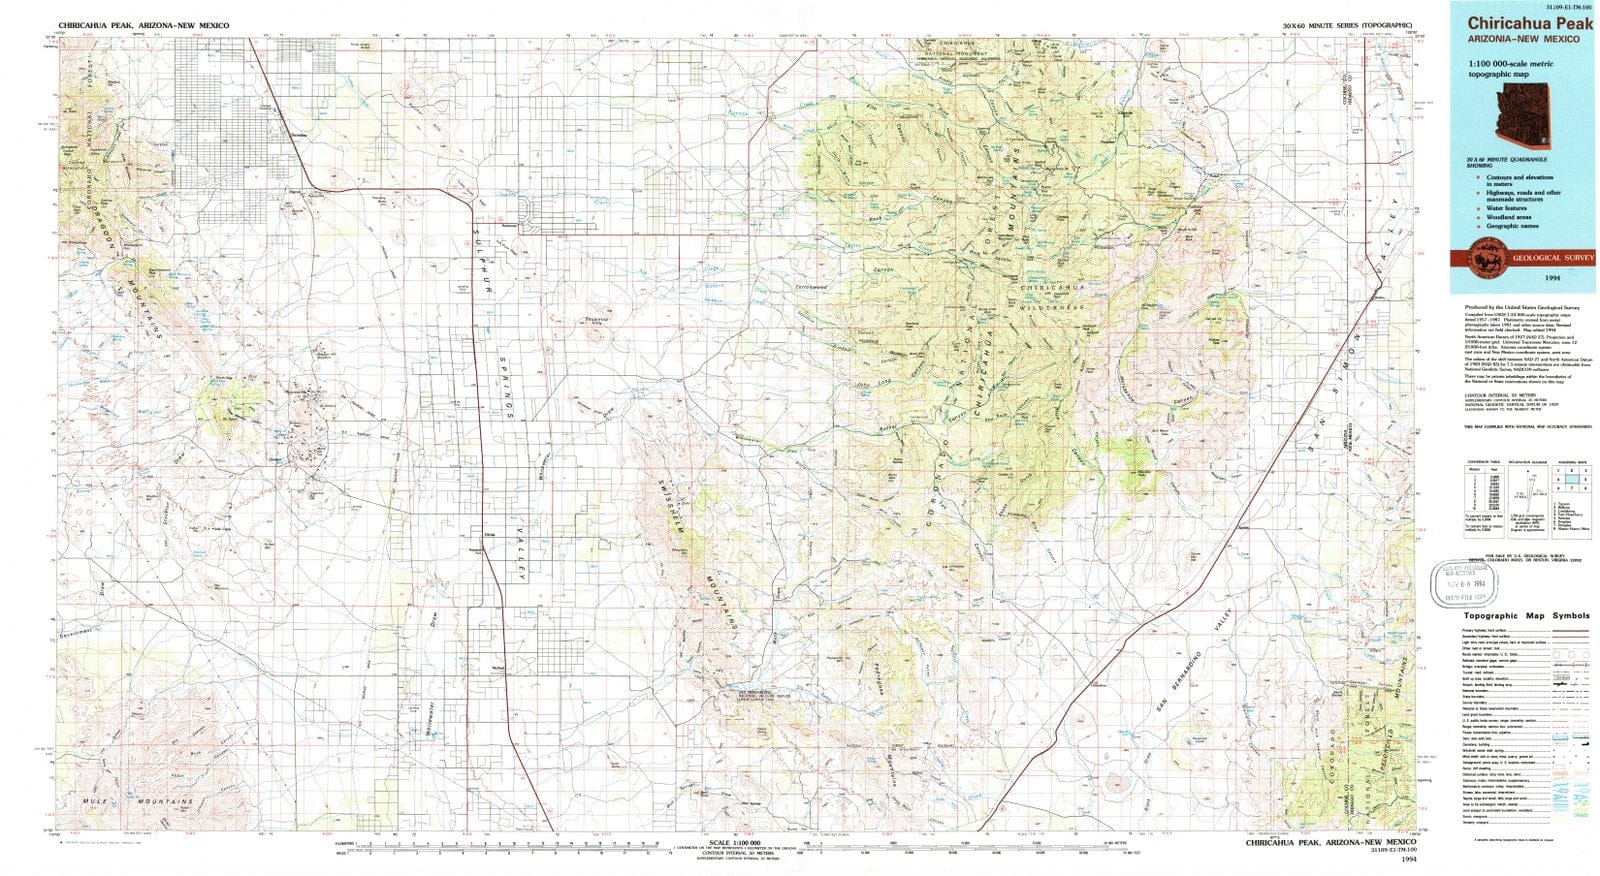 1994 Chiricahua Peak, AZ - Arizona - USGS Topographic Map